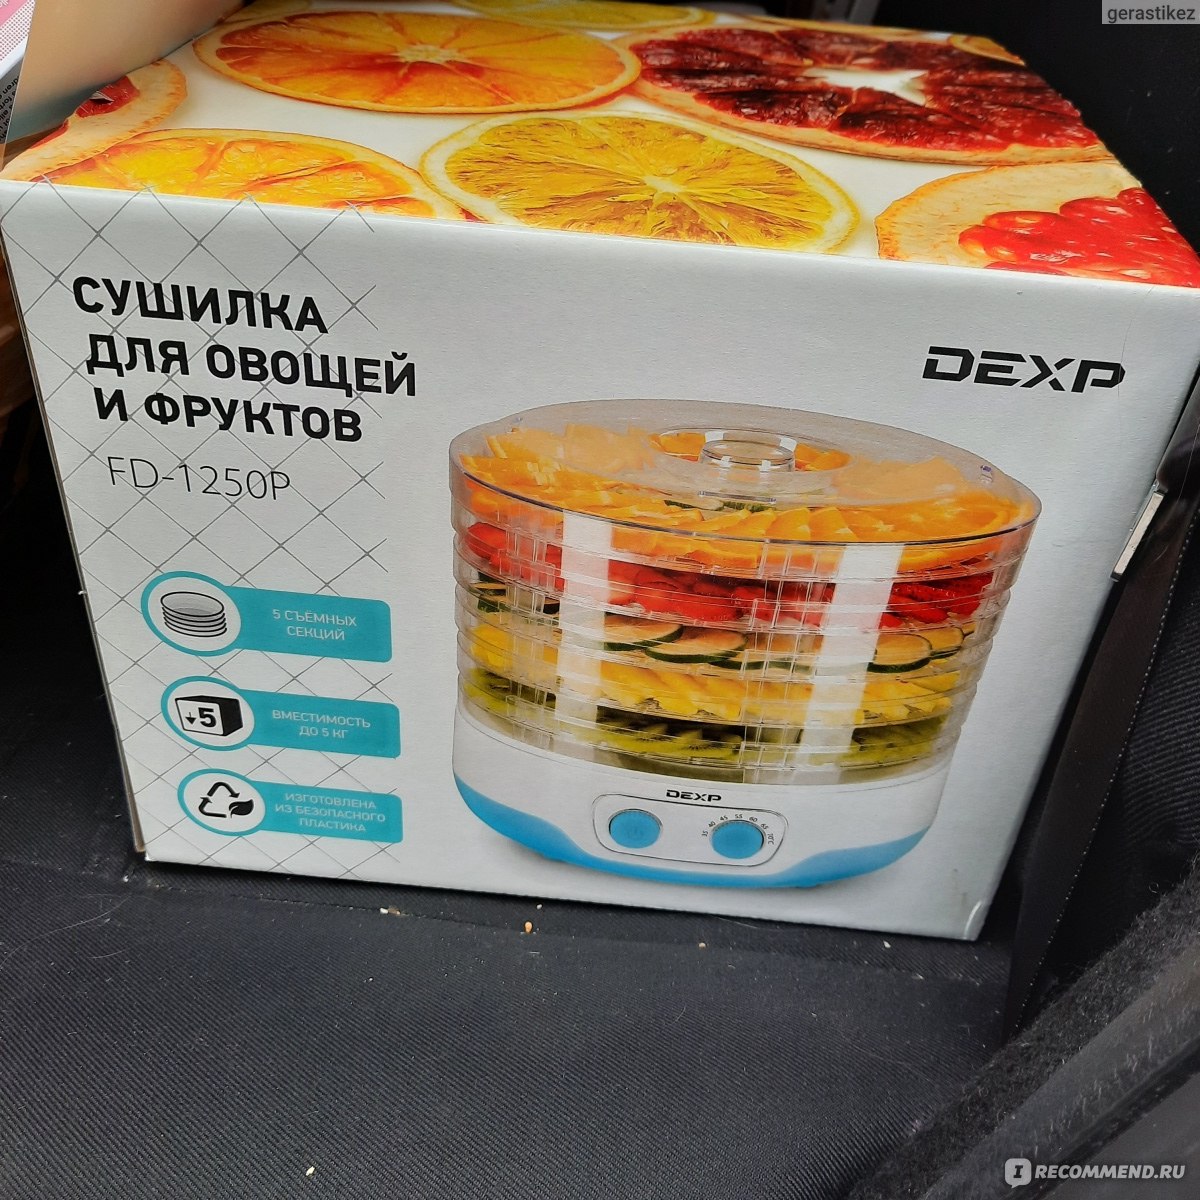 Сушилка для фруктов dexp. Сушилка для овощей и фруктов DEXP FD-1250p. Сушилка для овощей DEXP FD 1250p. Сушилка для фруктов Standart fd700a комплектация. Сушилка для овощей и фруктов DEXP FD-1250p инструкция.